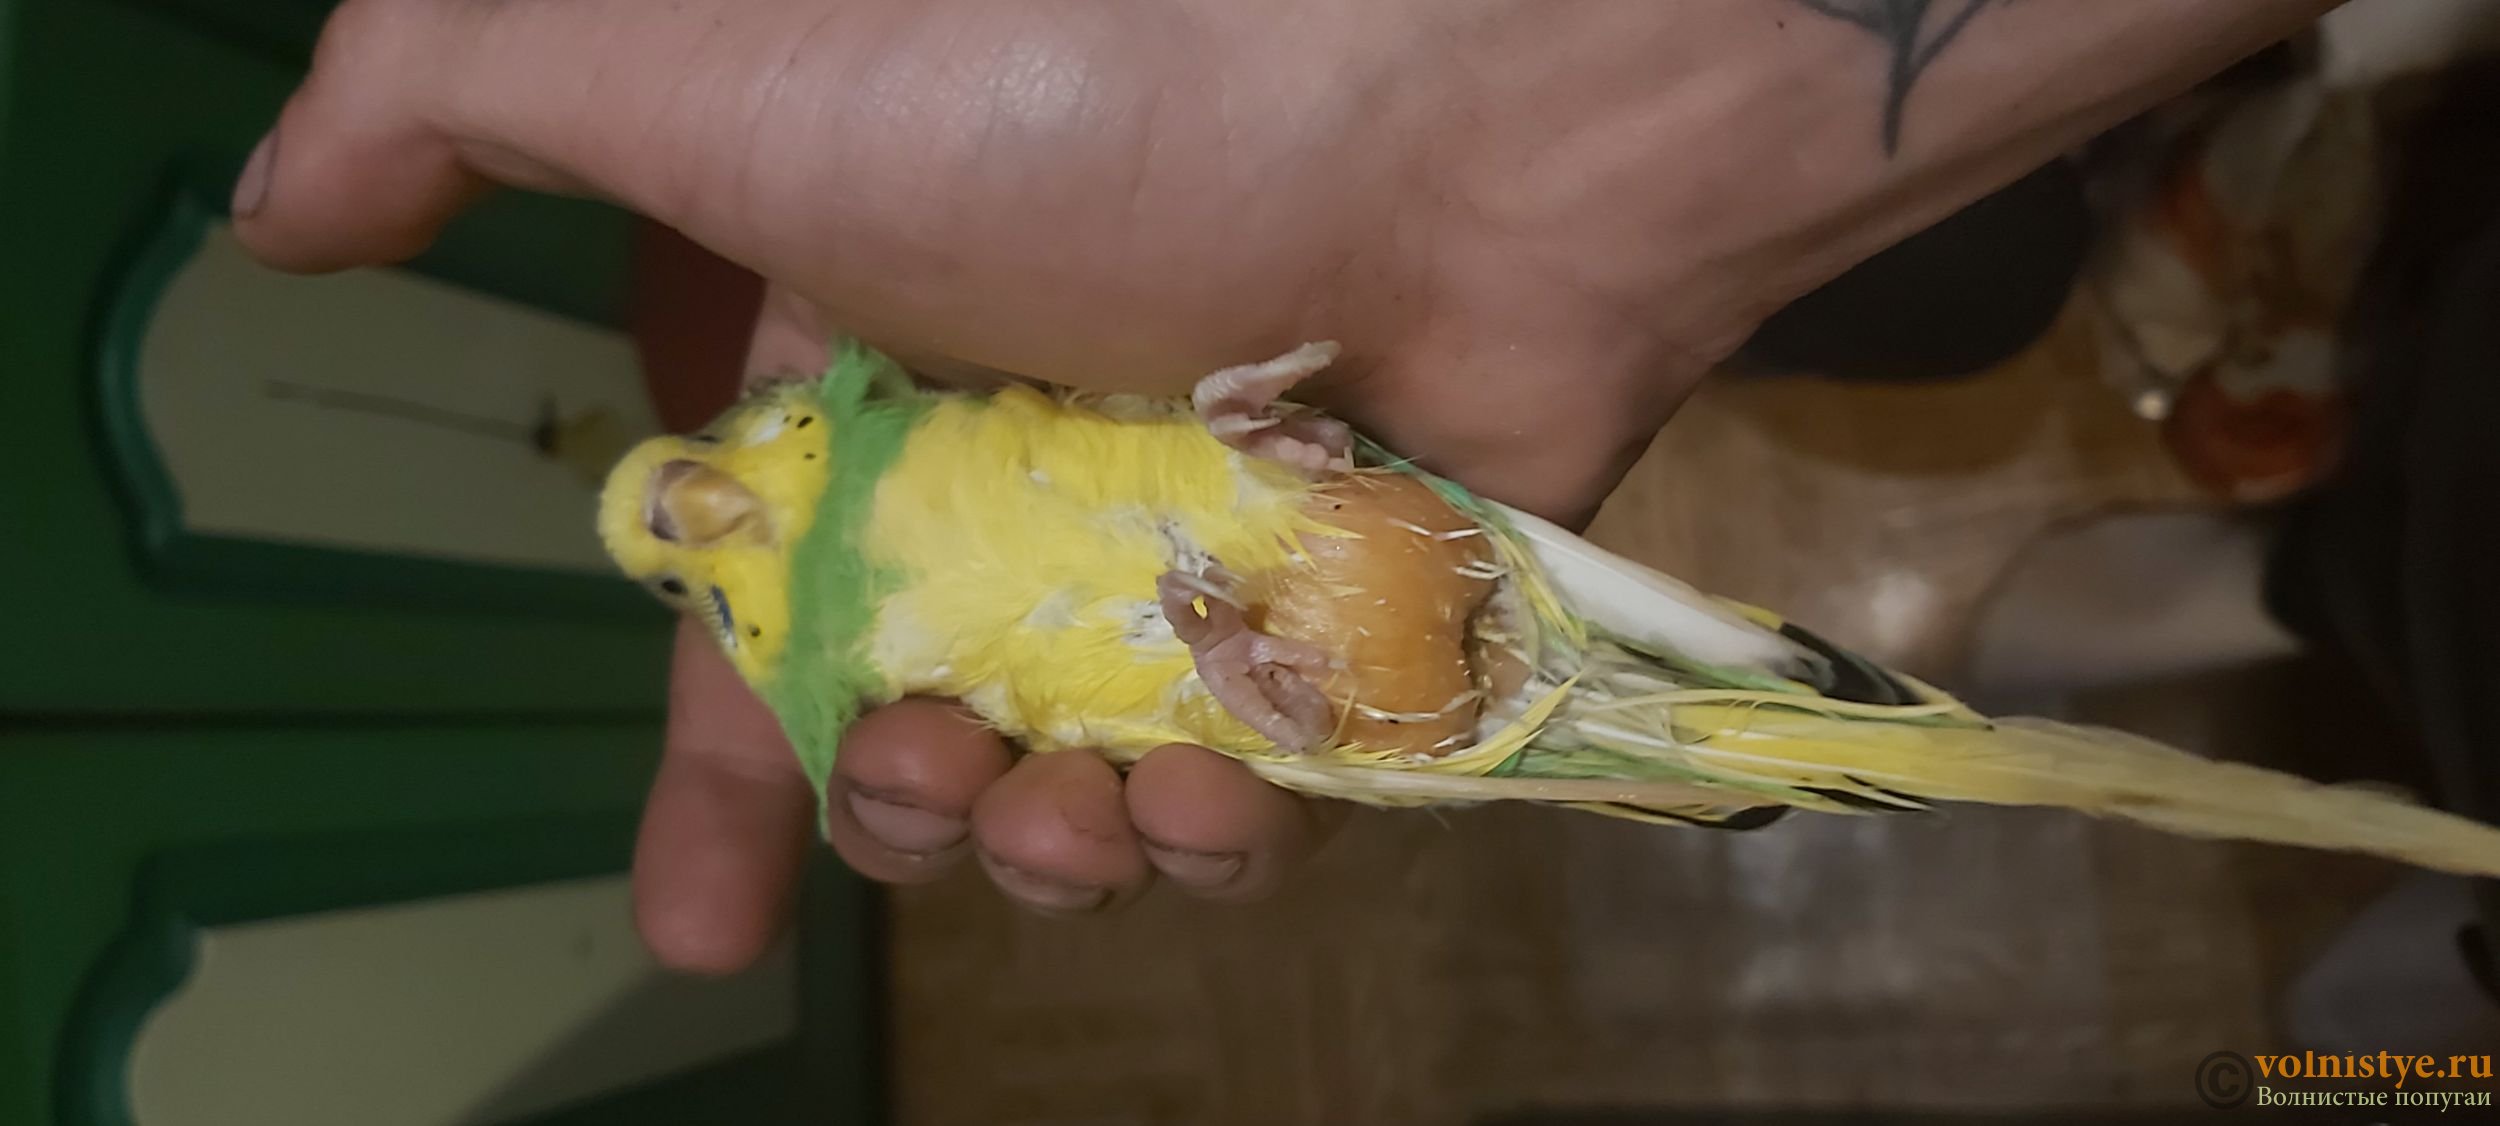 Рвота у попугая волнистого что делать если птица рвет зернами?